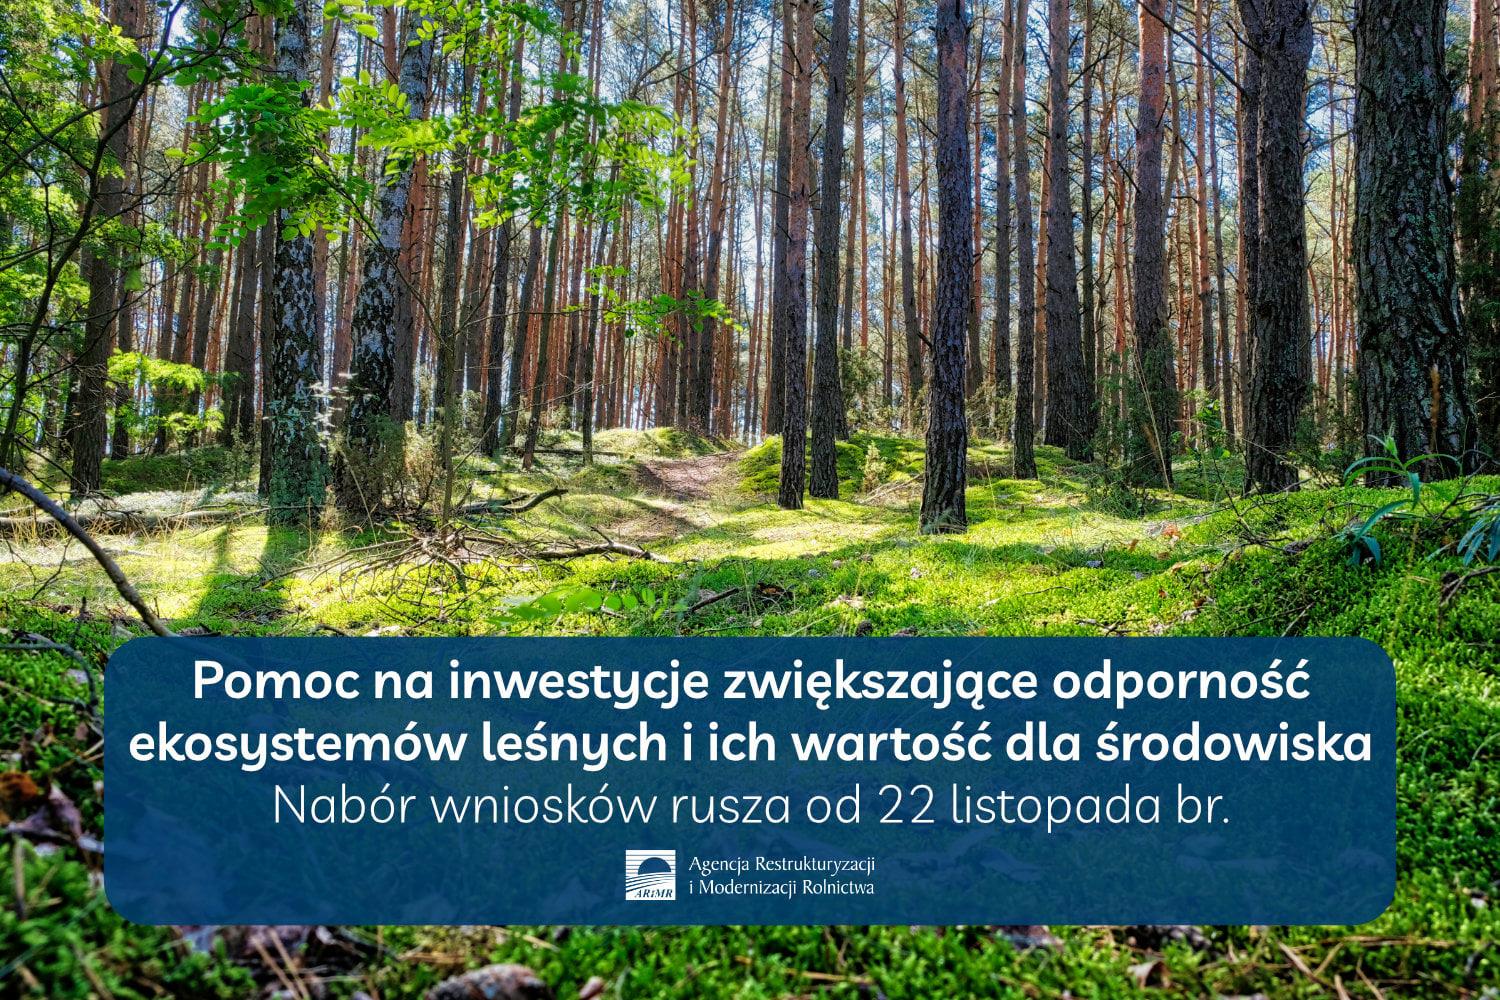 Jesteś właścicielem lasu i chcesz dokonać w nim inwestycji? – Miasto  Zduńska Wola